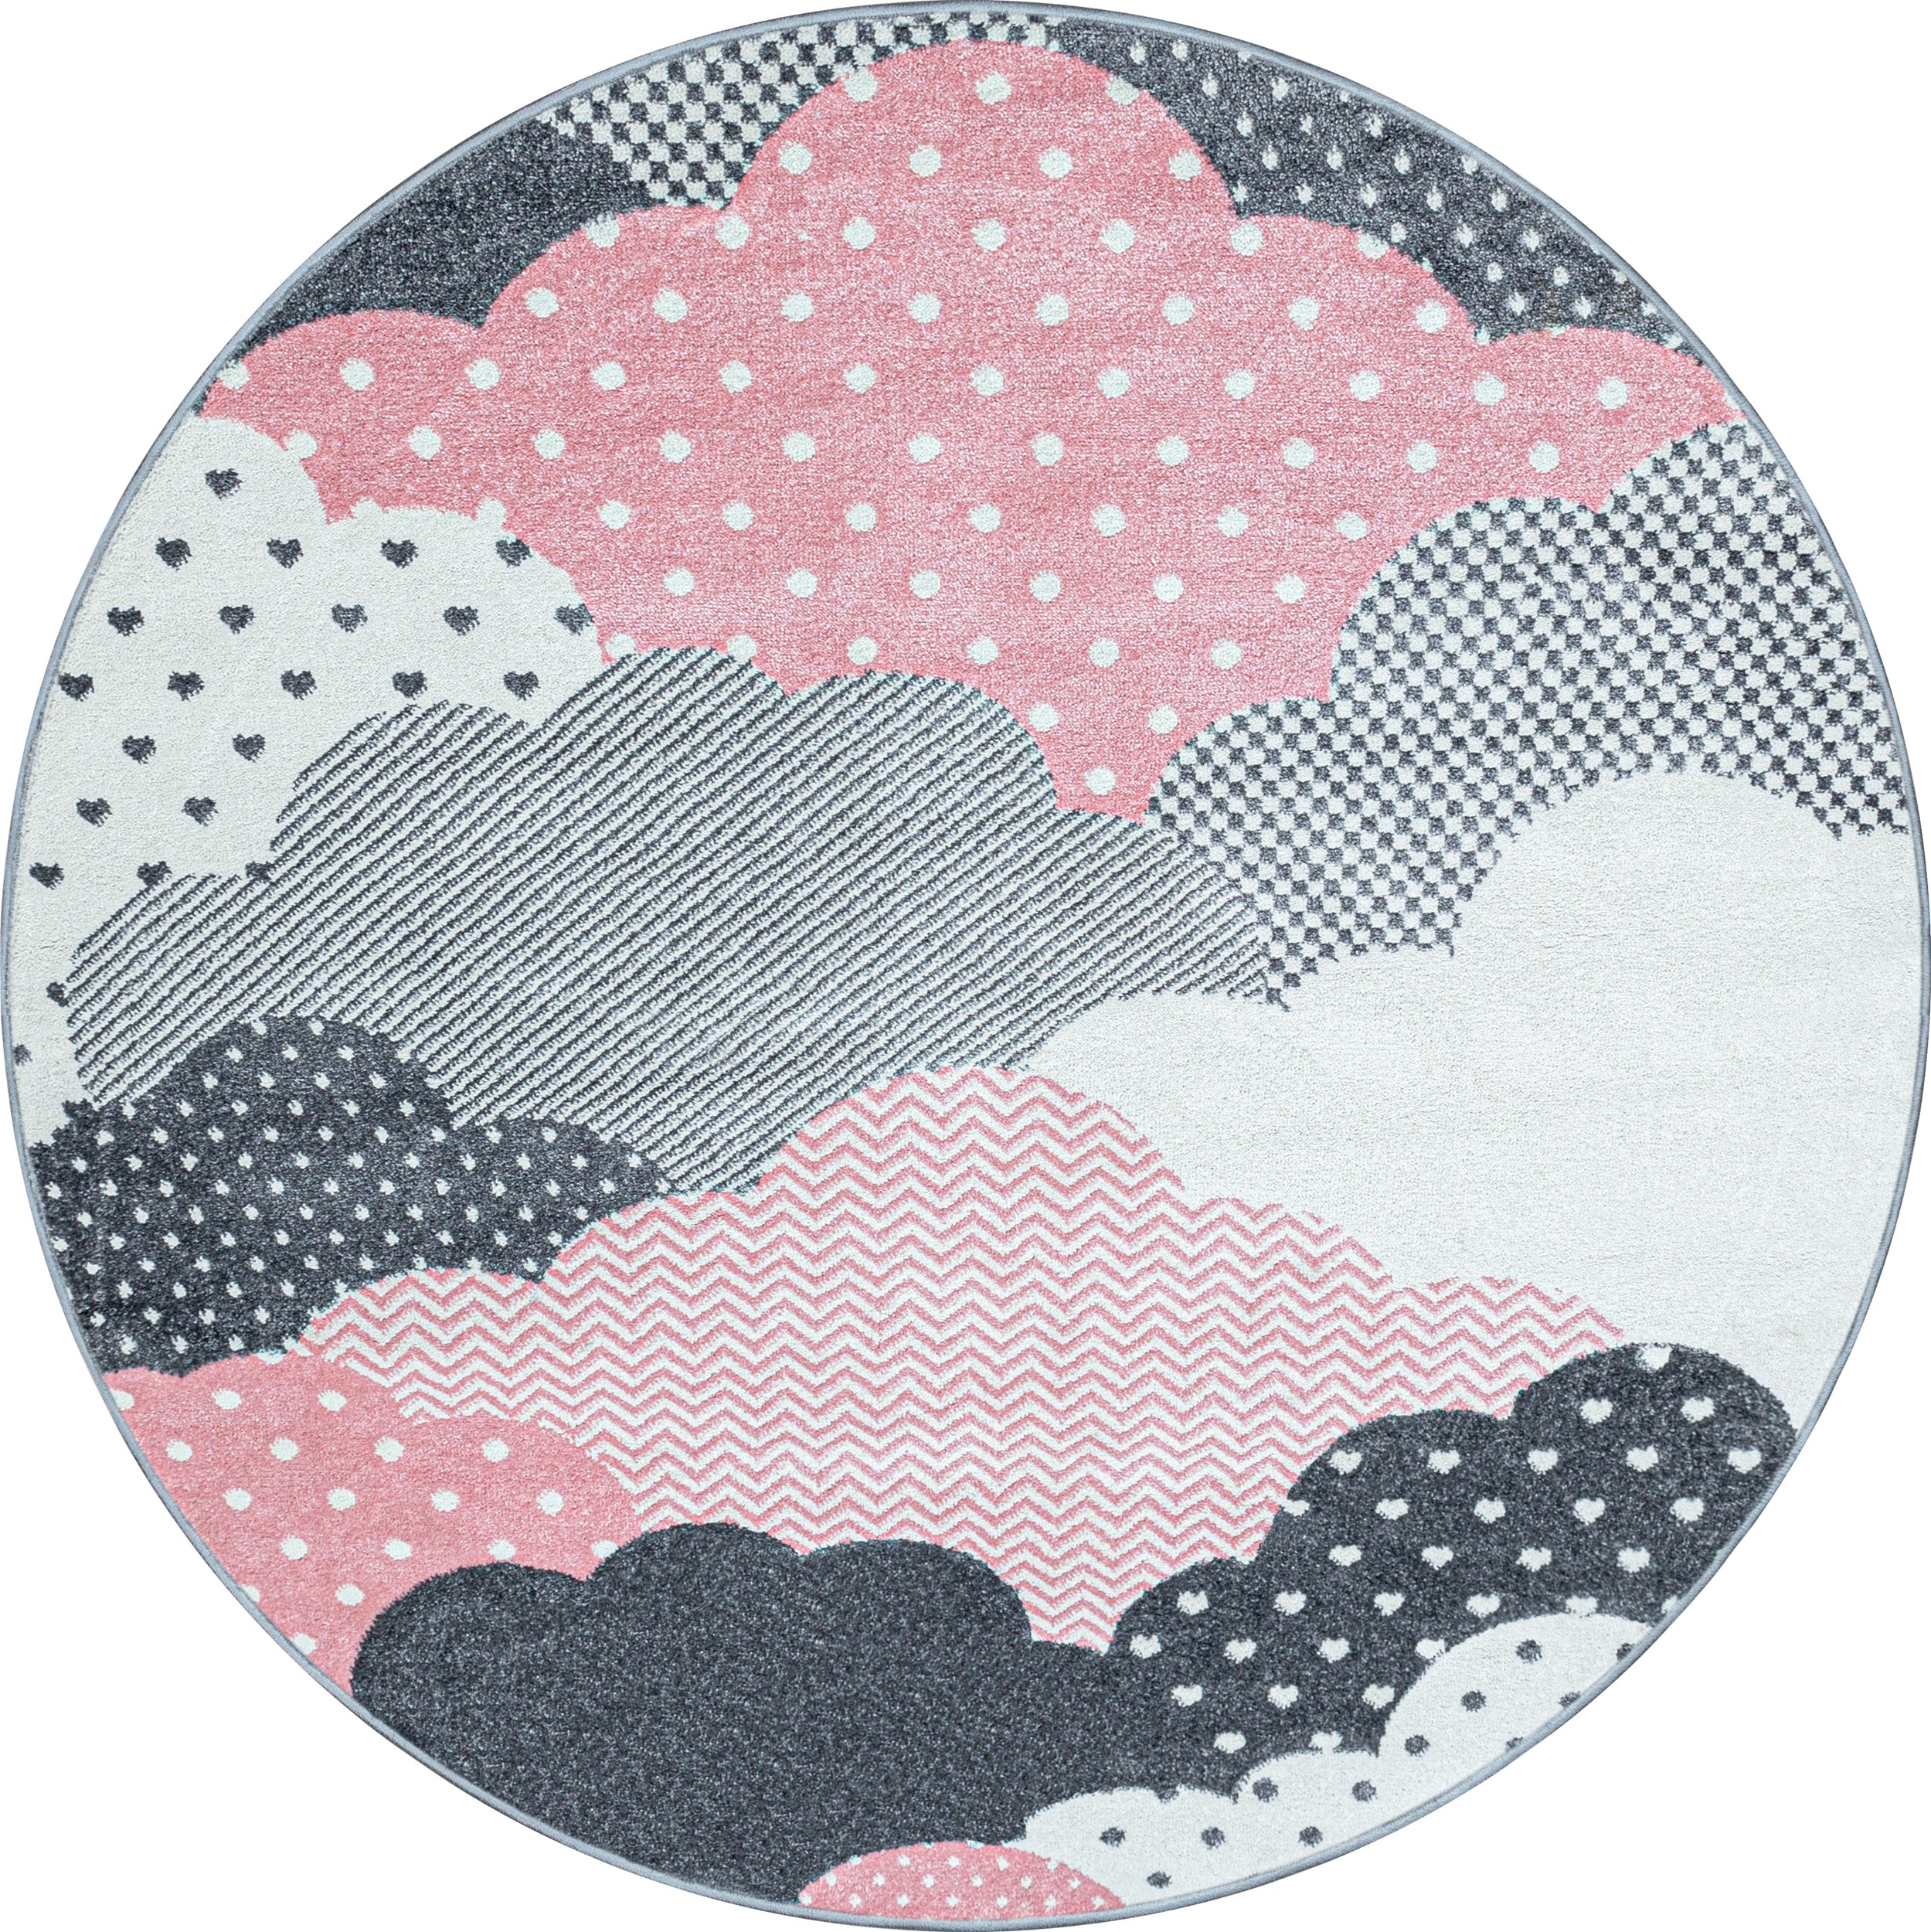 Kinderteppich Kurzflor Soft Wolken Wölkchen Kinderzimmer Babyzimmer Grau Pink